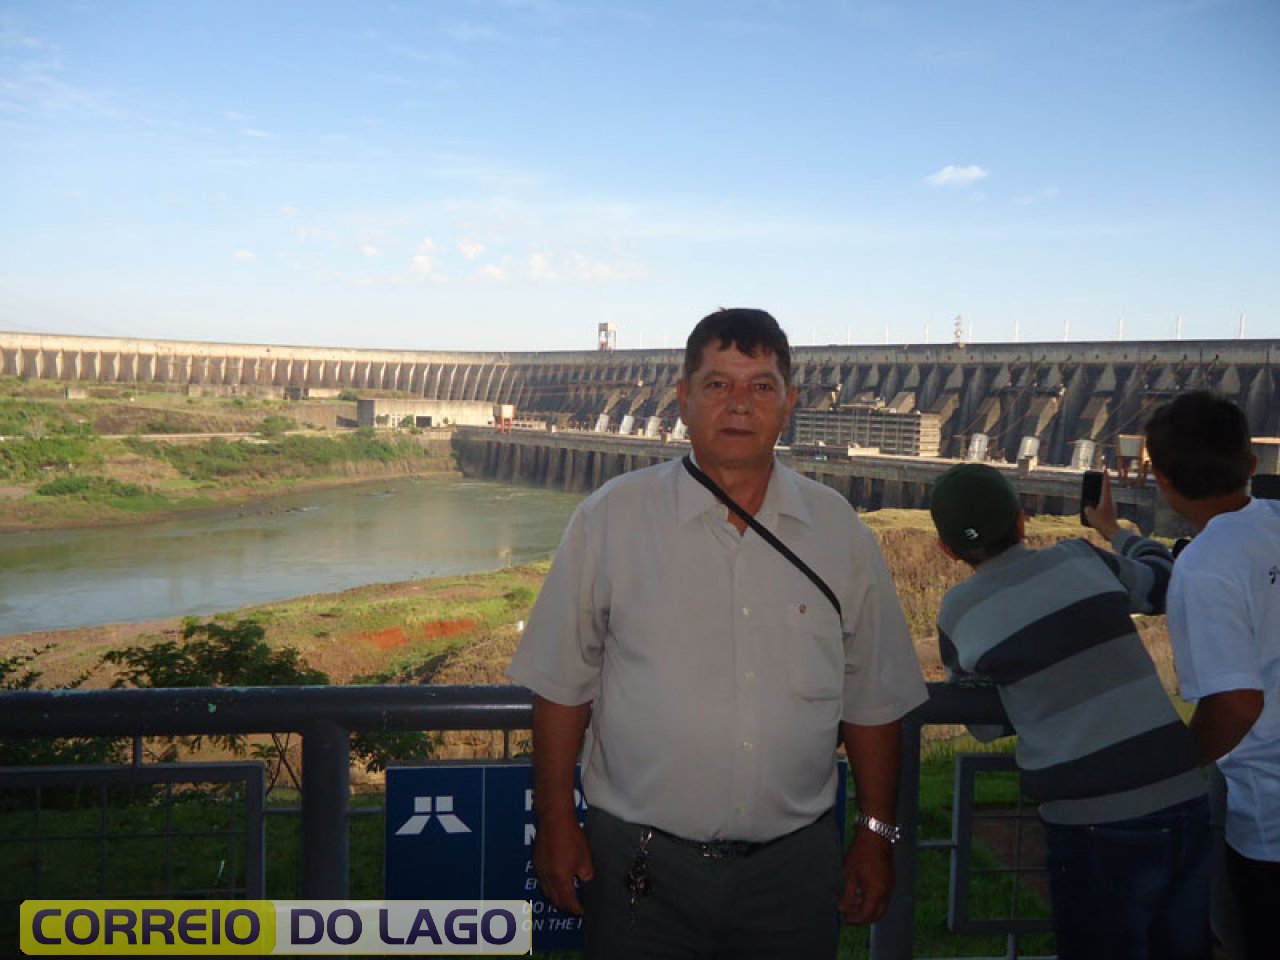 José Carvalho da Silva em visita a barragem de Itaipu - Foz do Iguaçu.